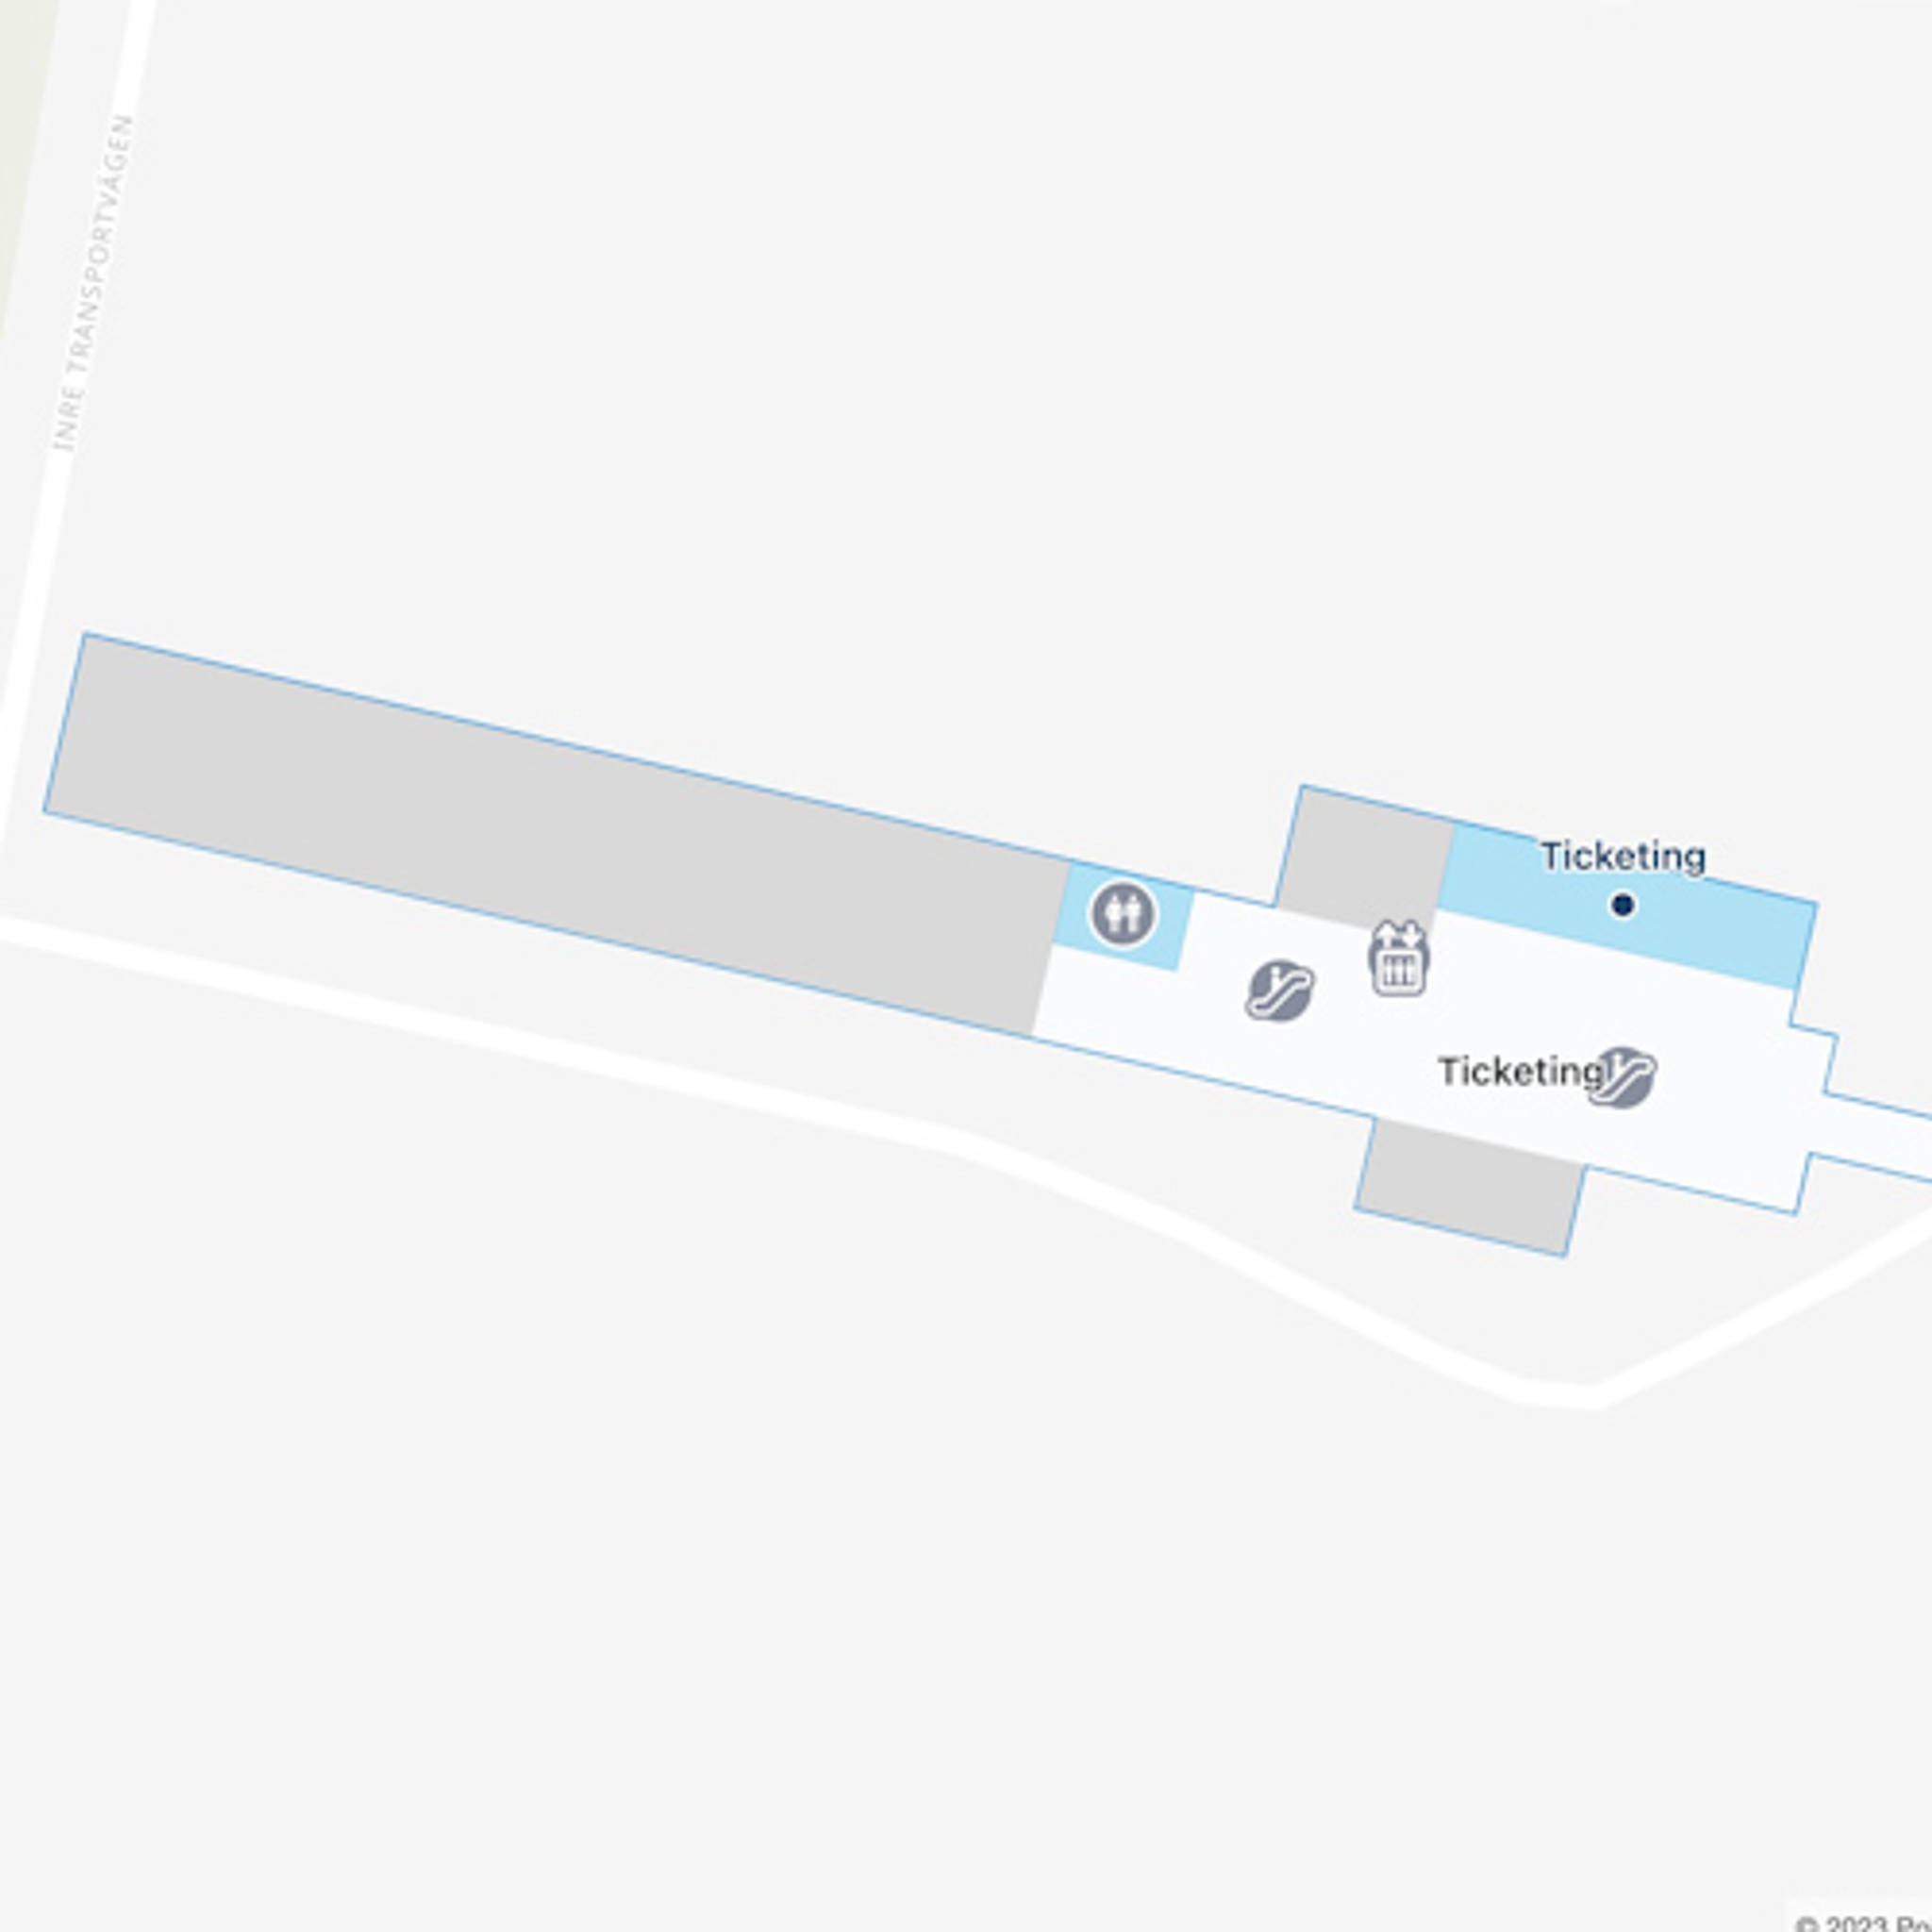 Stockholm Arlanda Airport ARN Terminal 3 Map